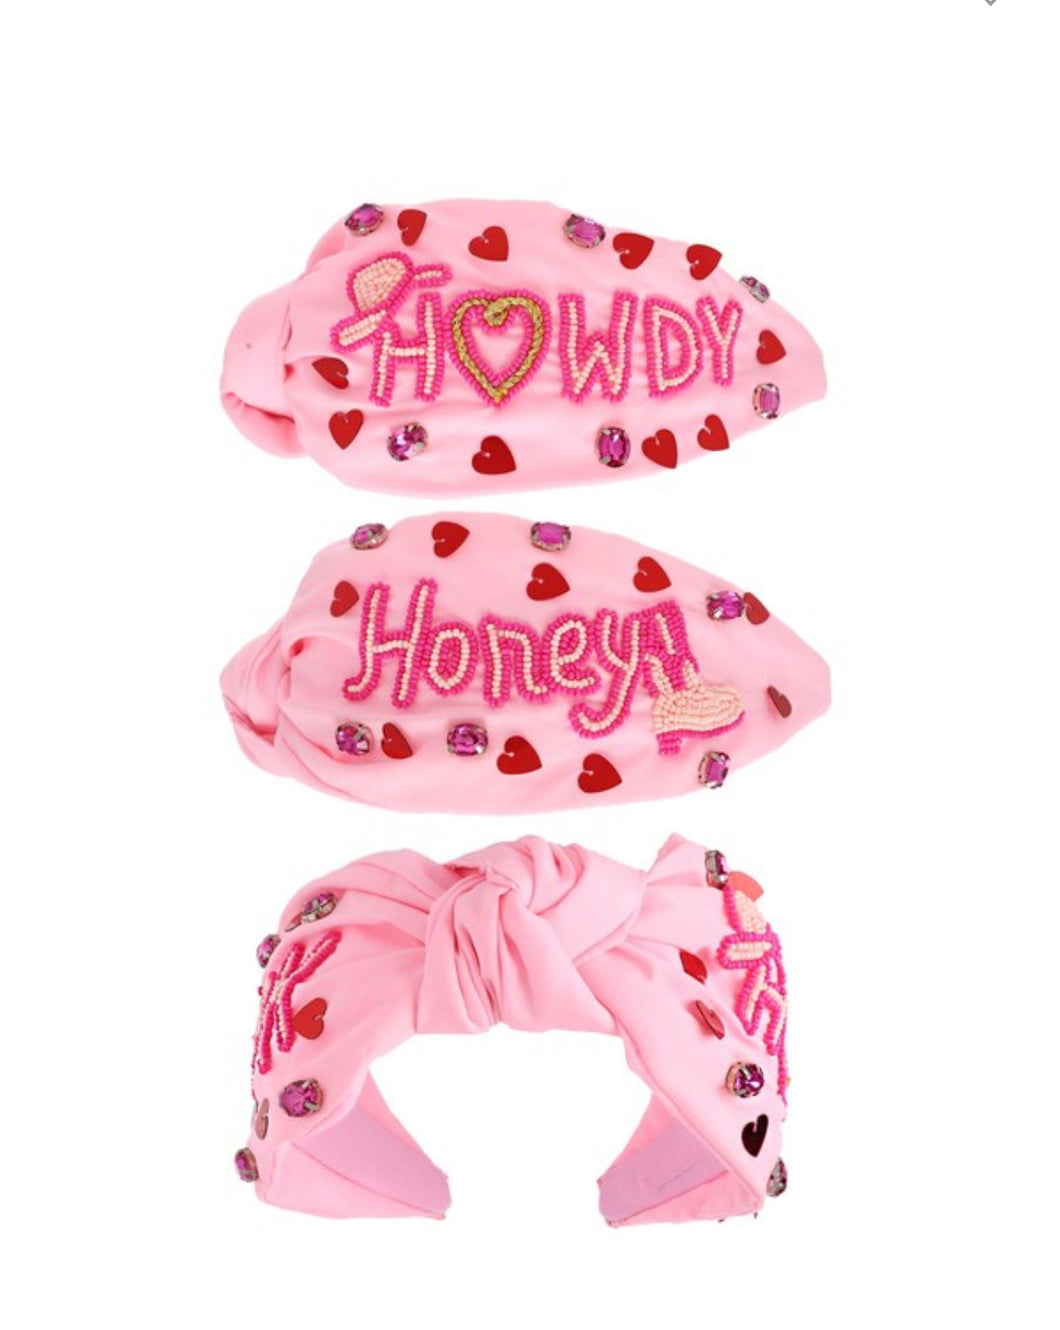 Howdy Honey Headband